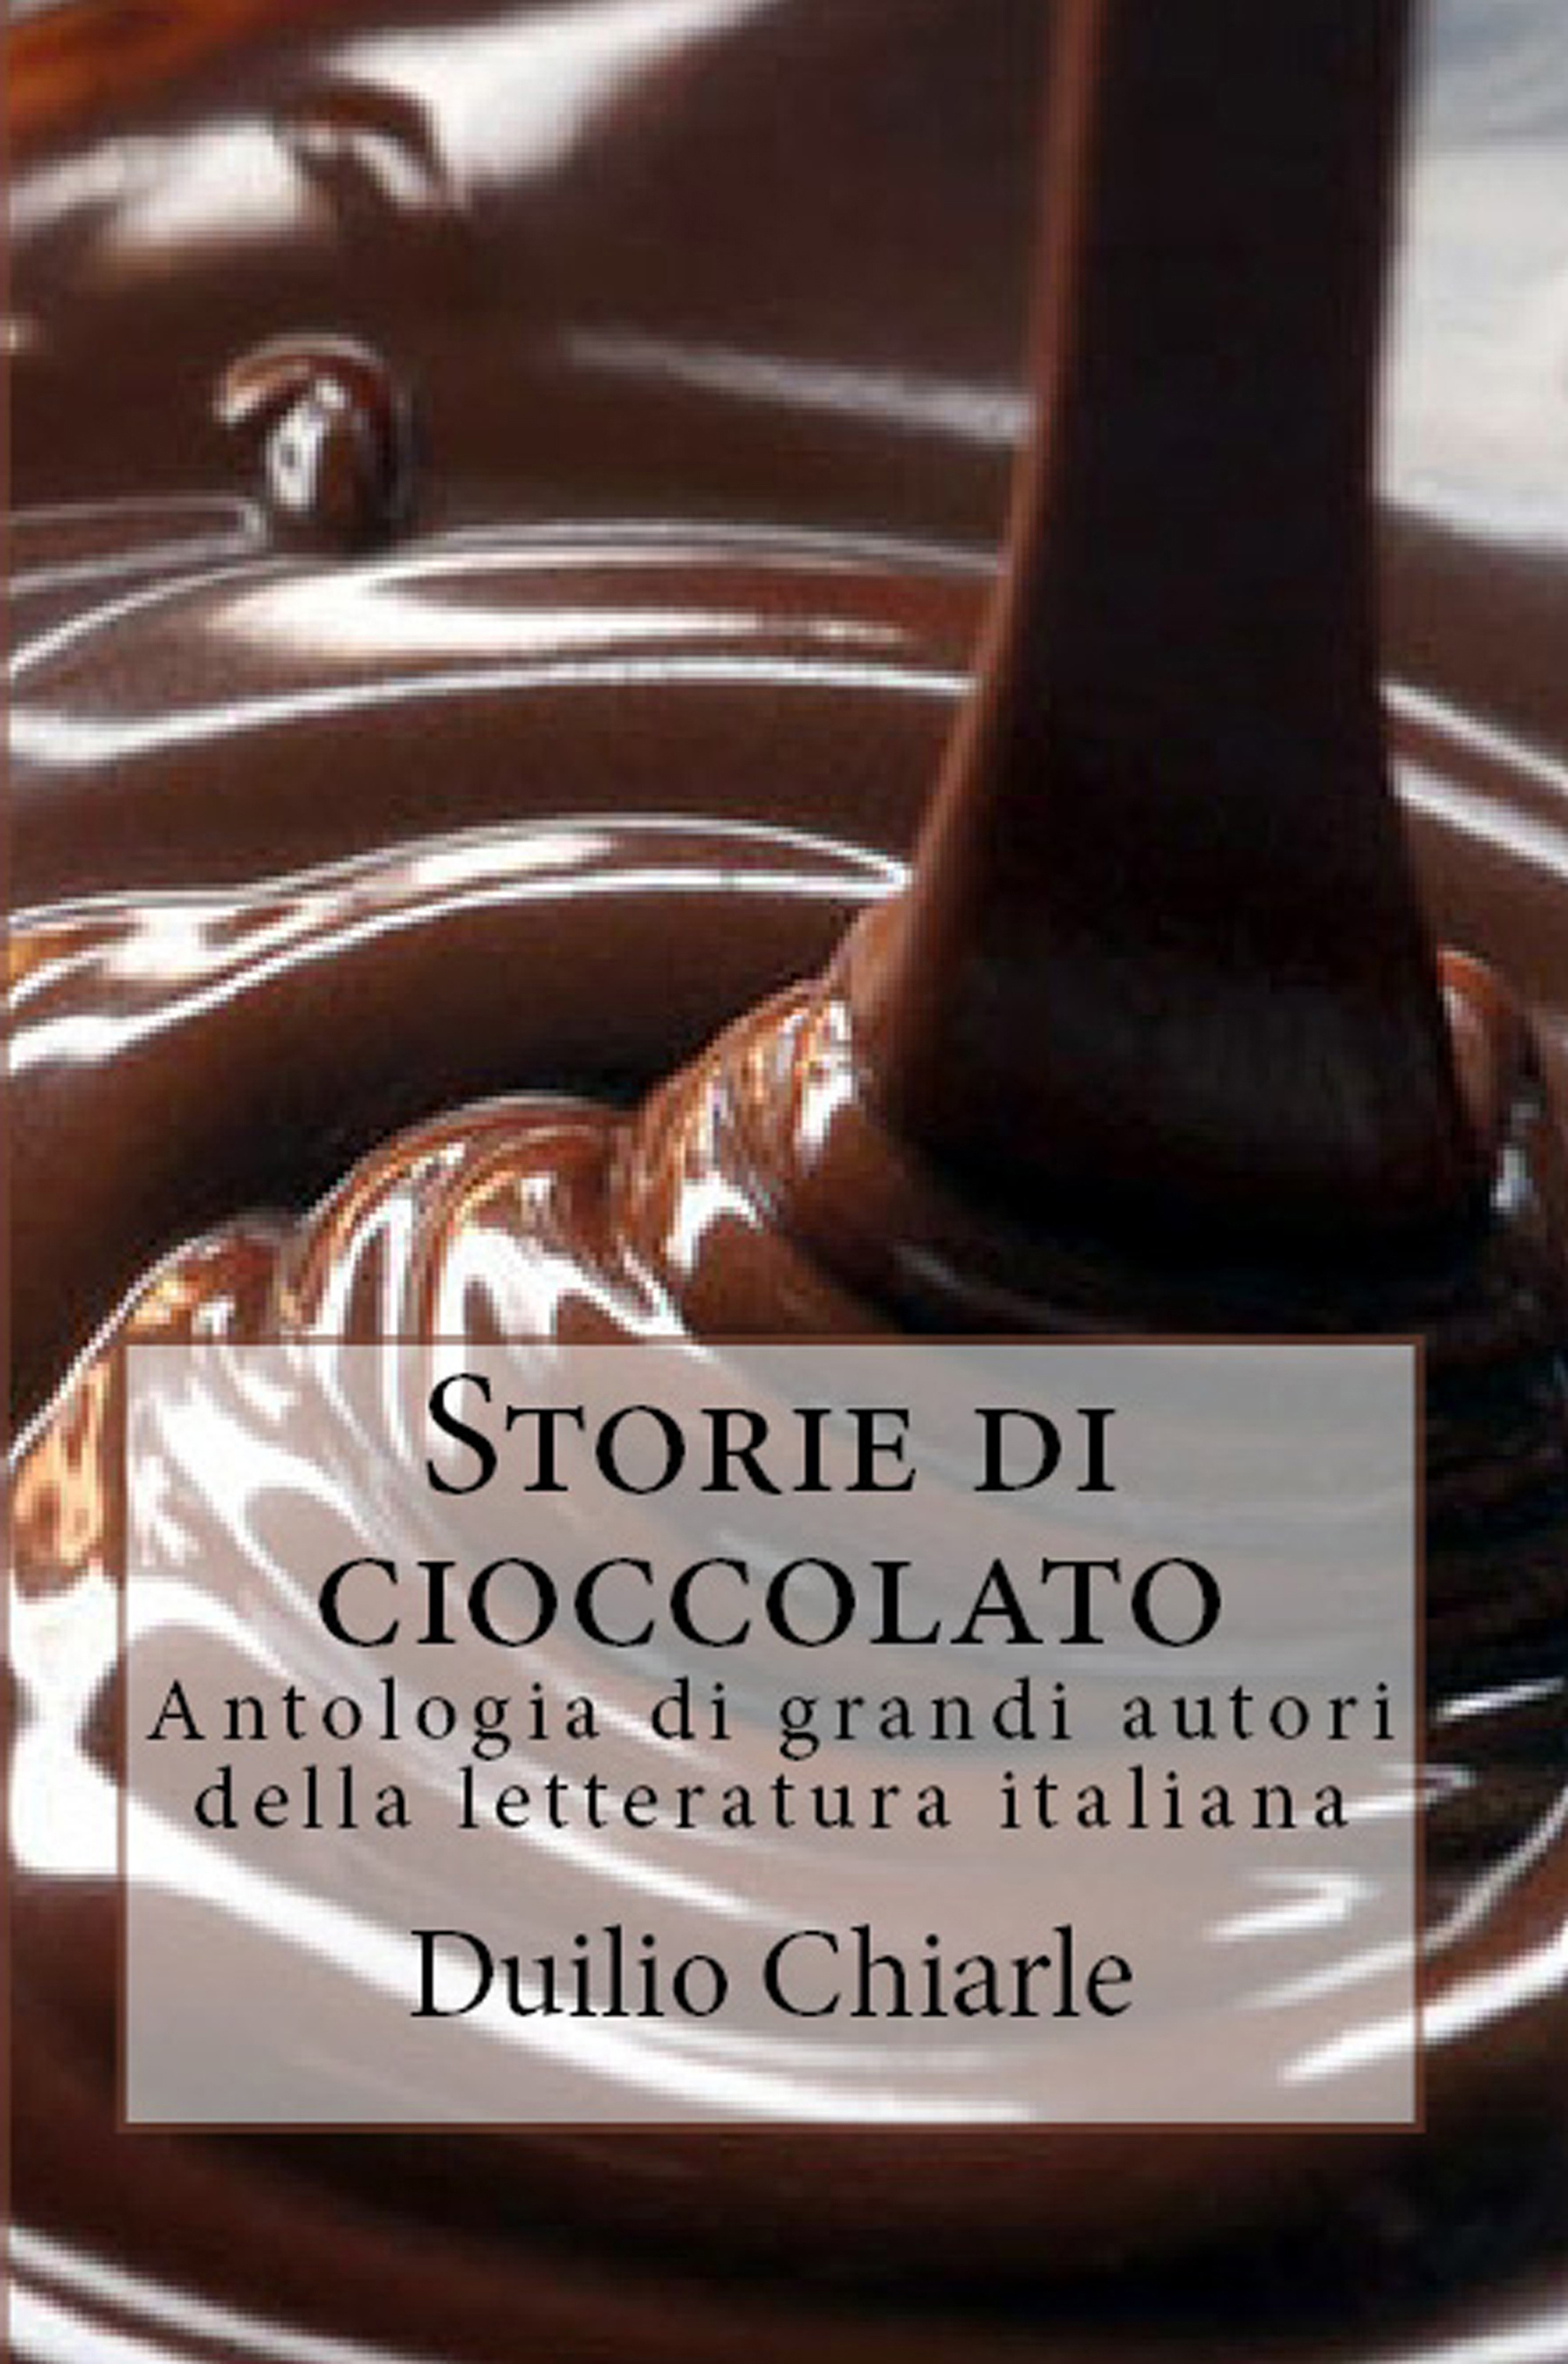 Storie di cioccolato: Antologia di grandi autori della letteratura italiana)